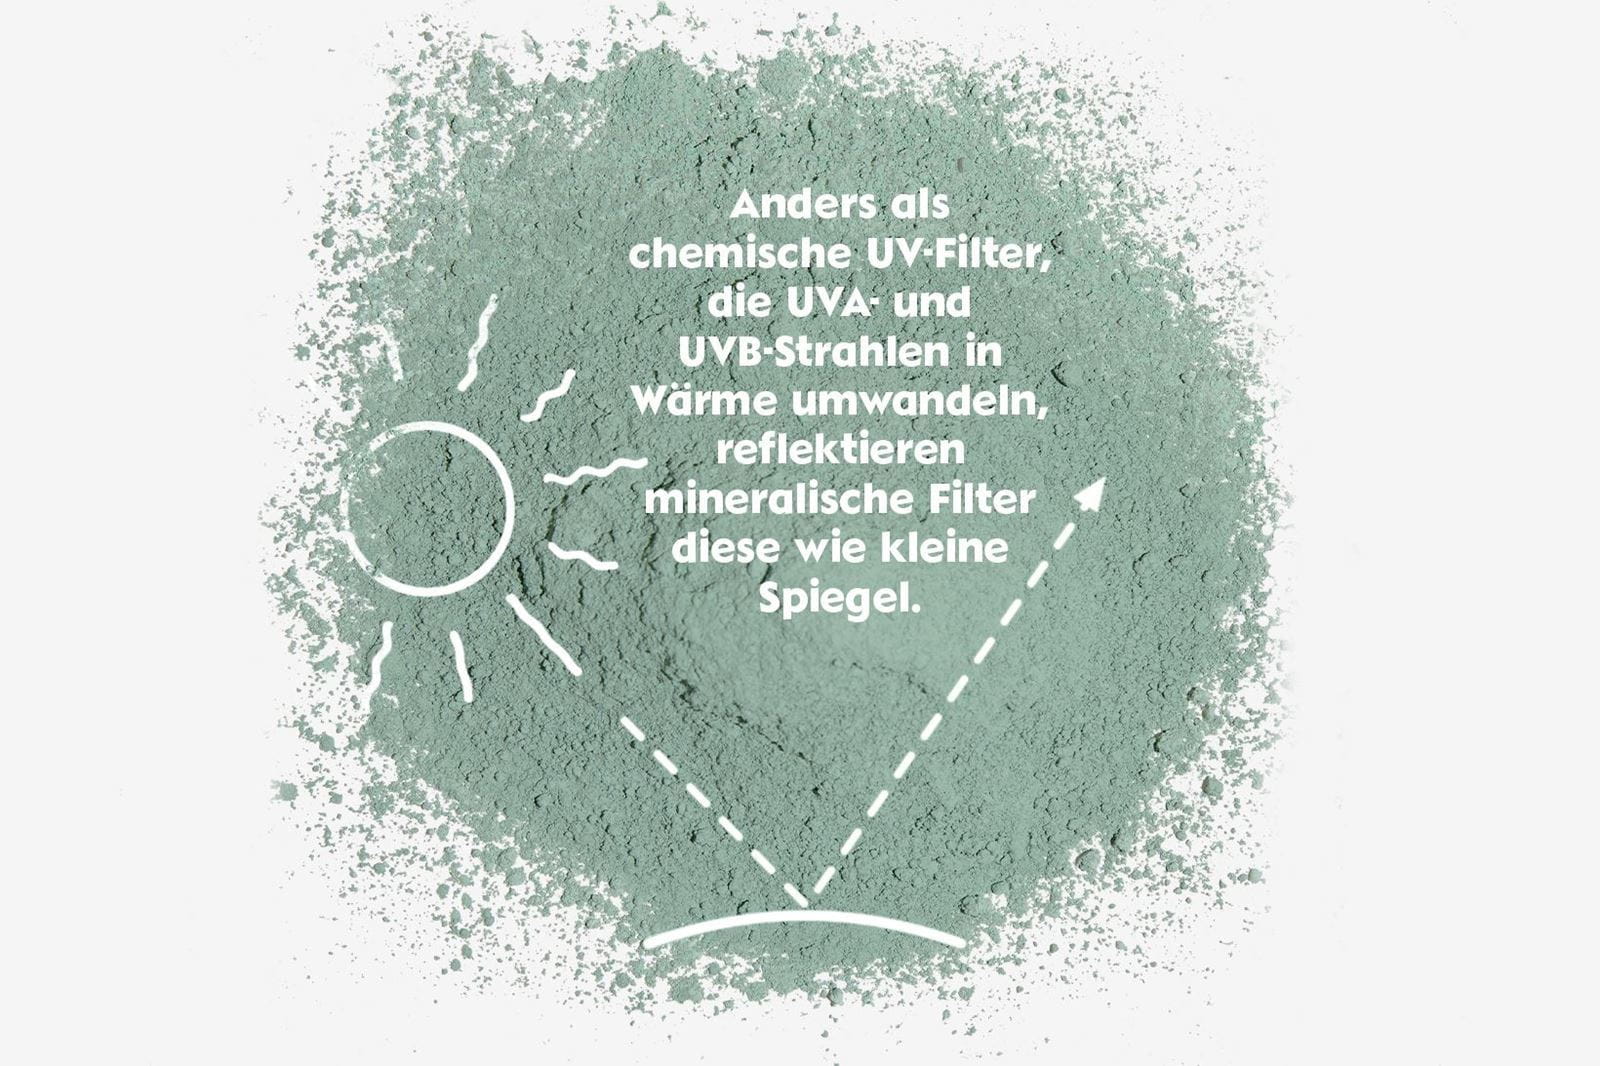 Mineralische UV-Filter